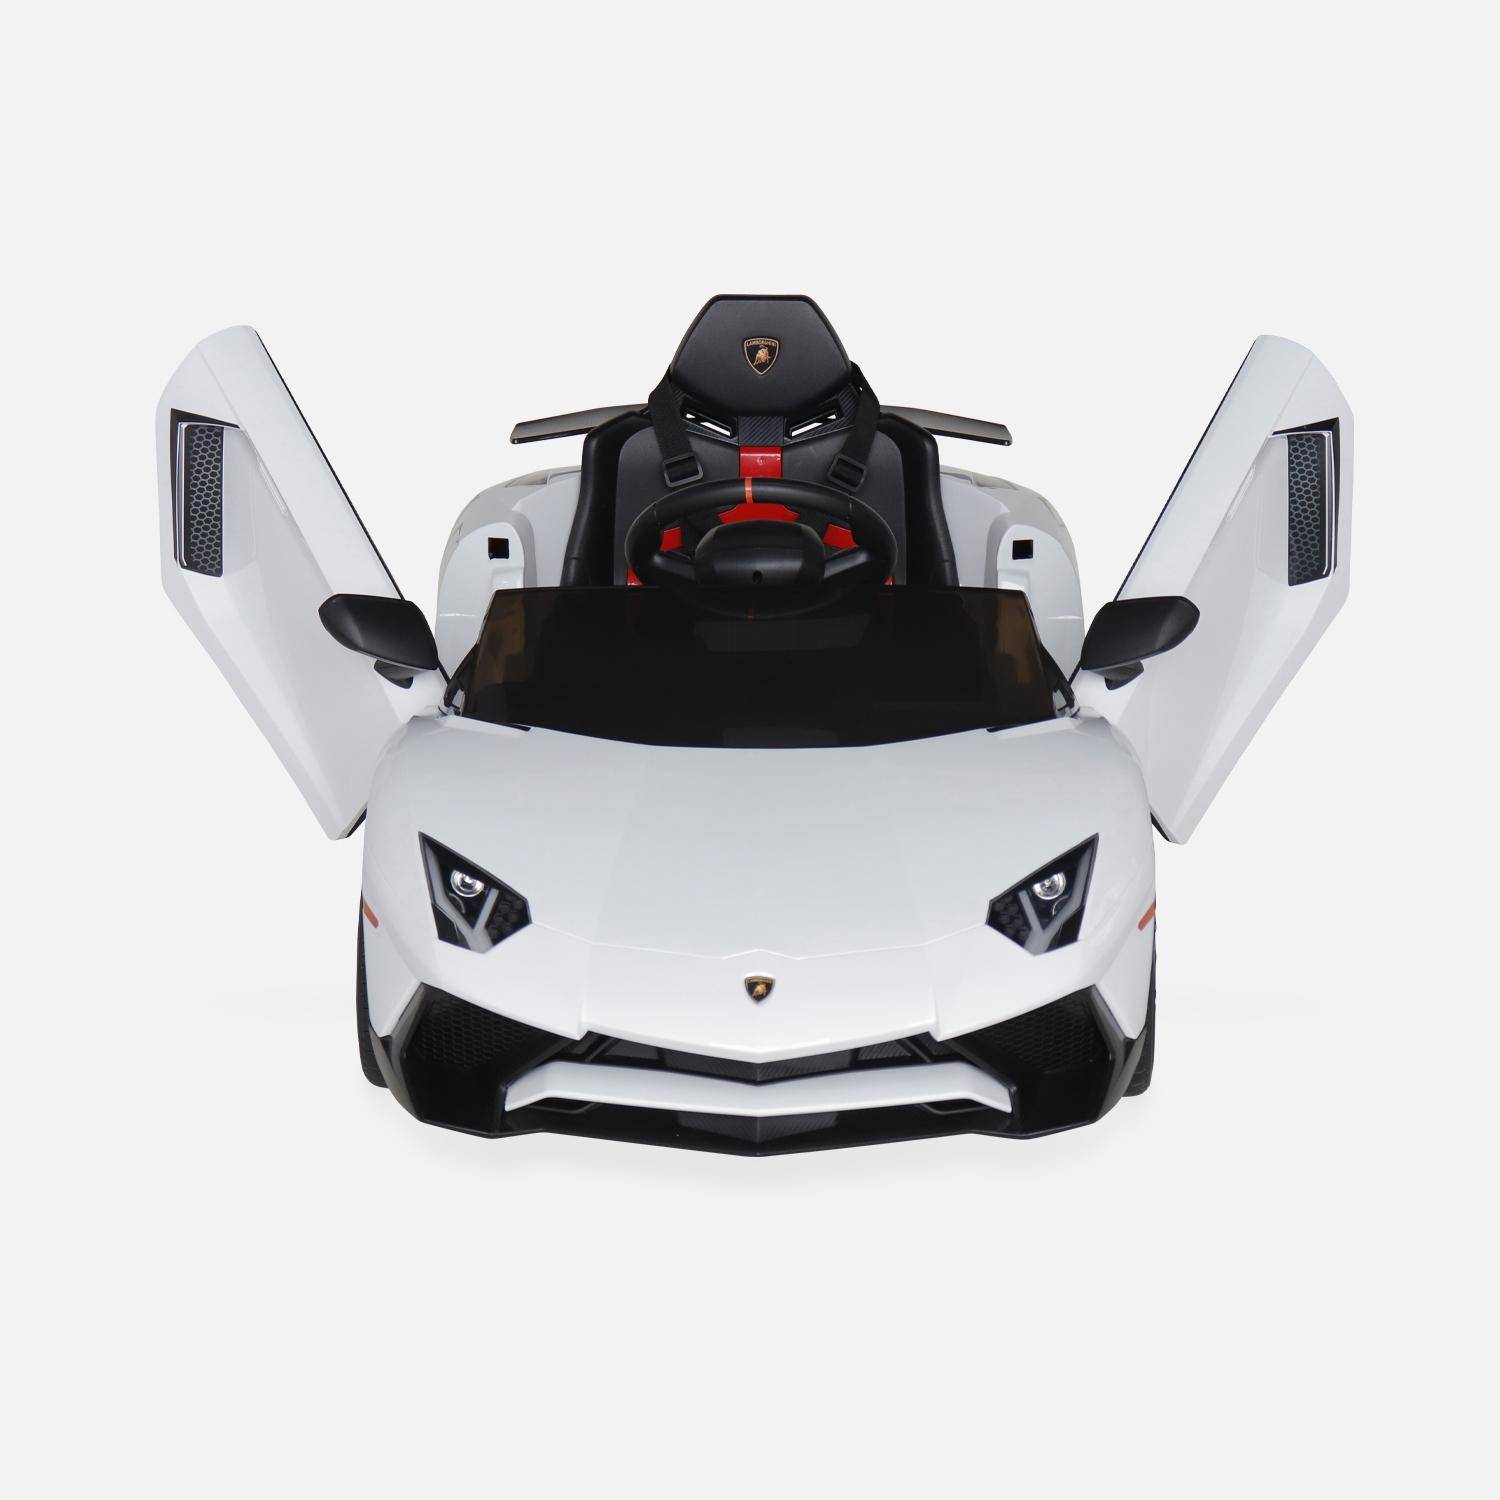 12V Elektroauto für Kinder Lamborghini, weiß, 1 Sitzer, mit Autoradio, Fernbedienung, MP3, USB-Anschluss und funktionierenden Scheinwerfern Photo6